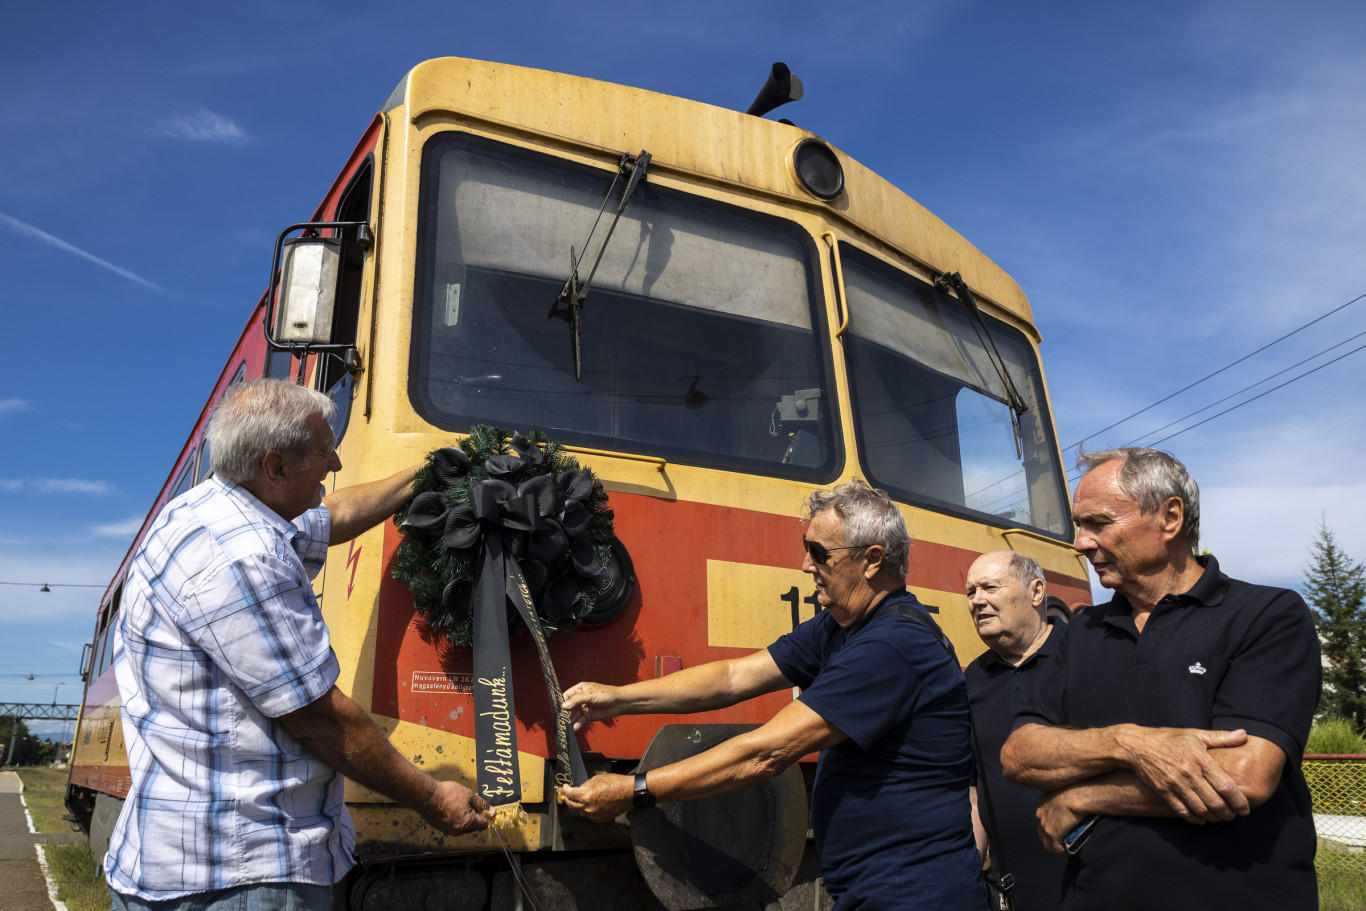 Két határon átnyúló vasútvonalon is visszaállítanák a személyszállítást a szlovákok